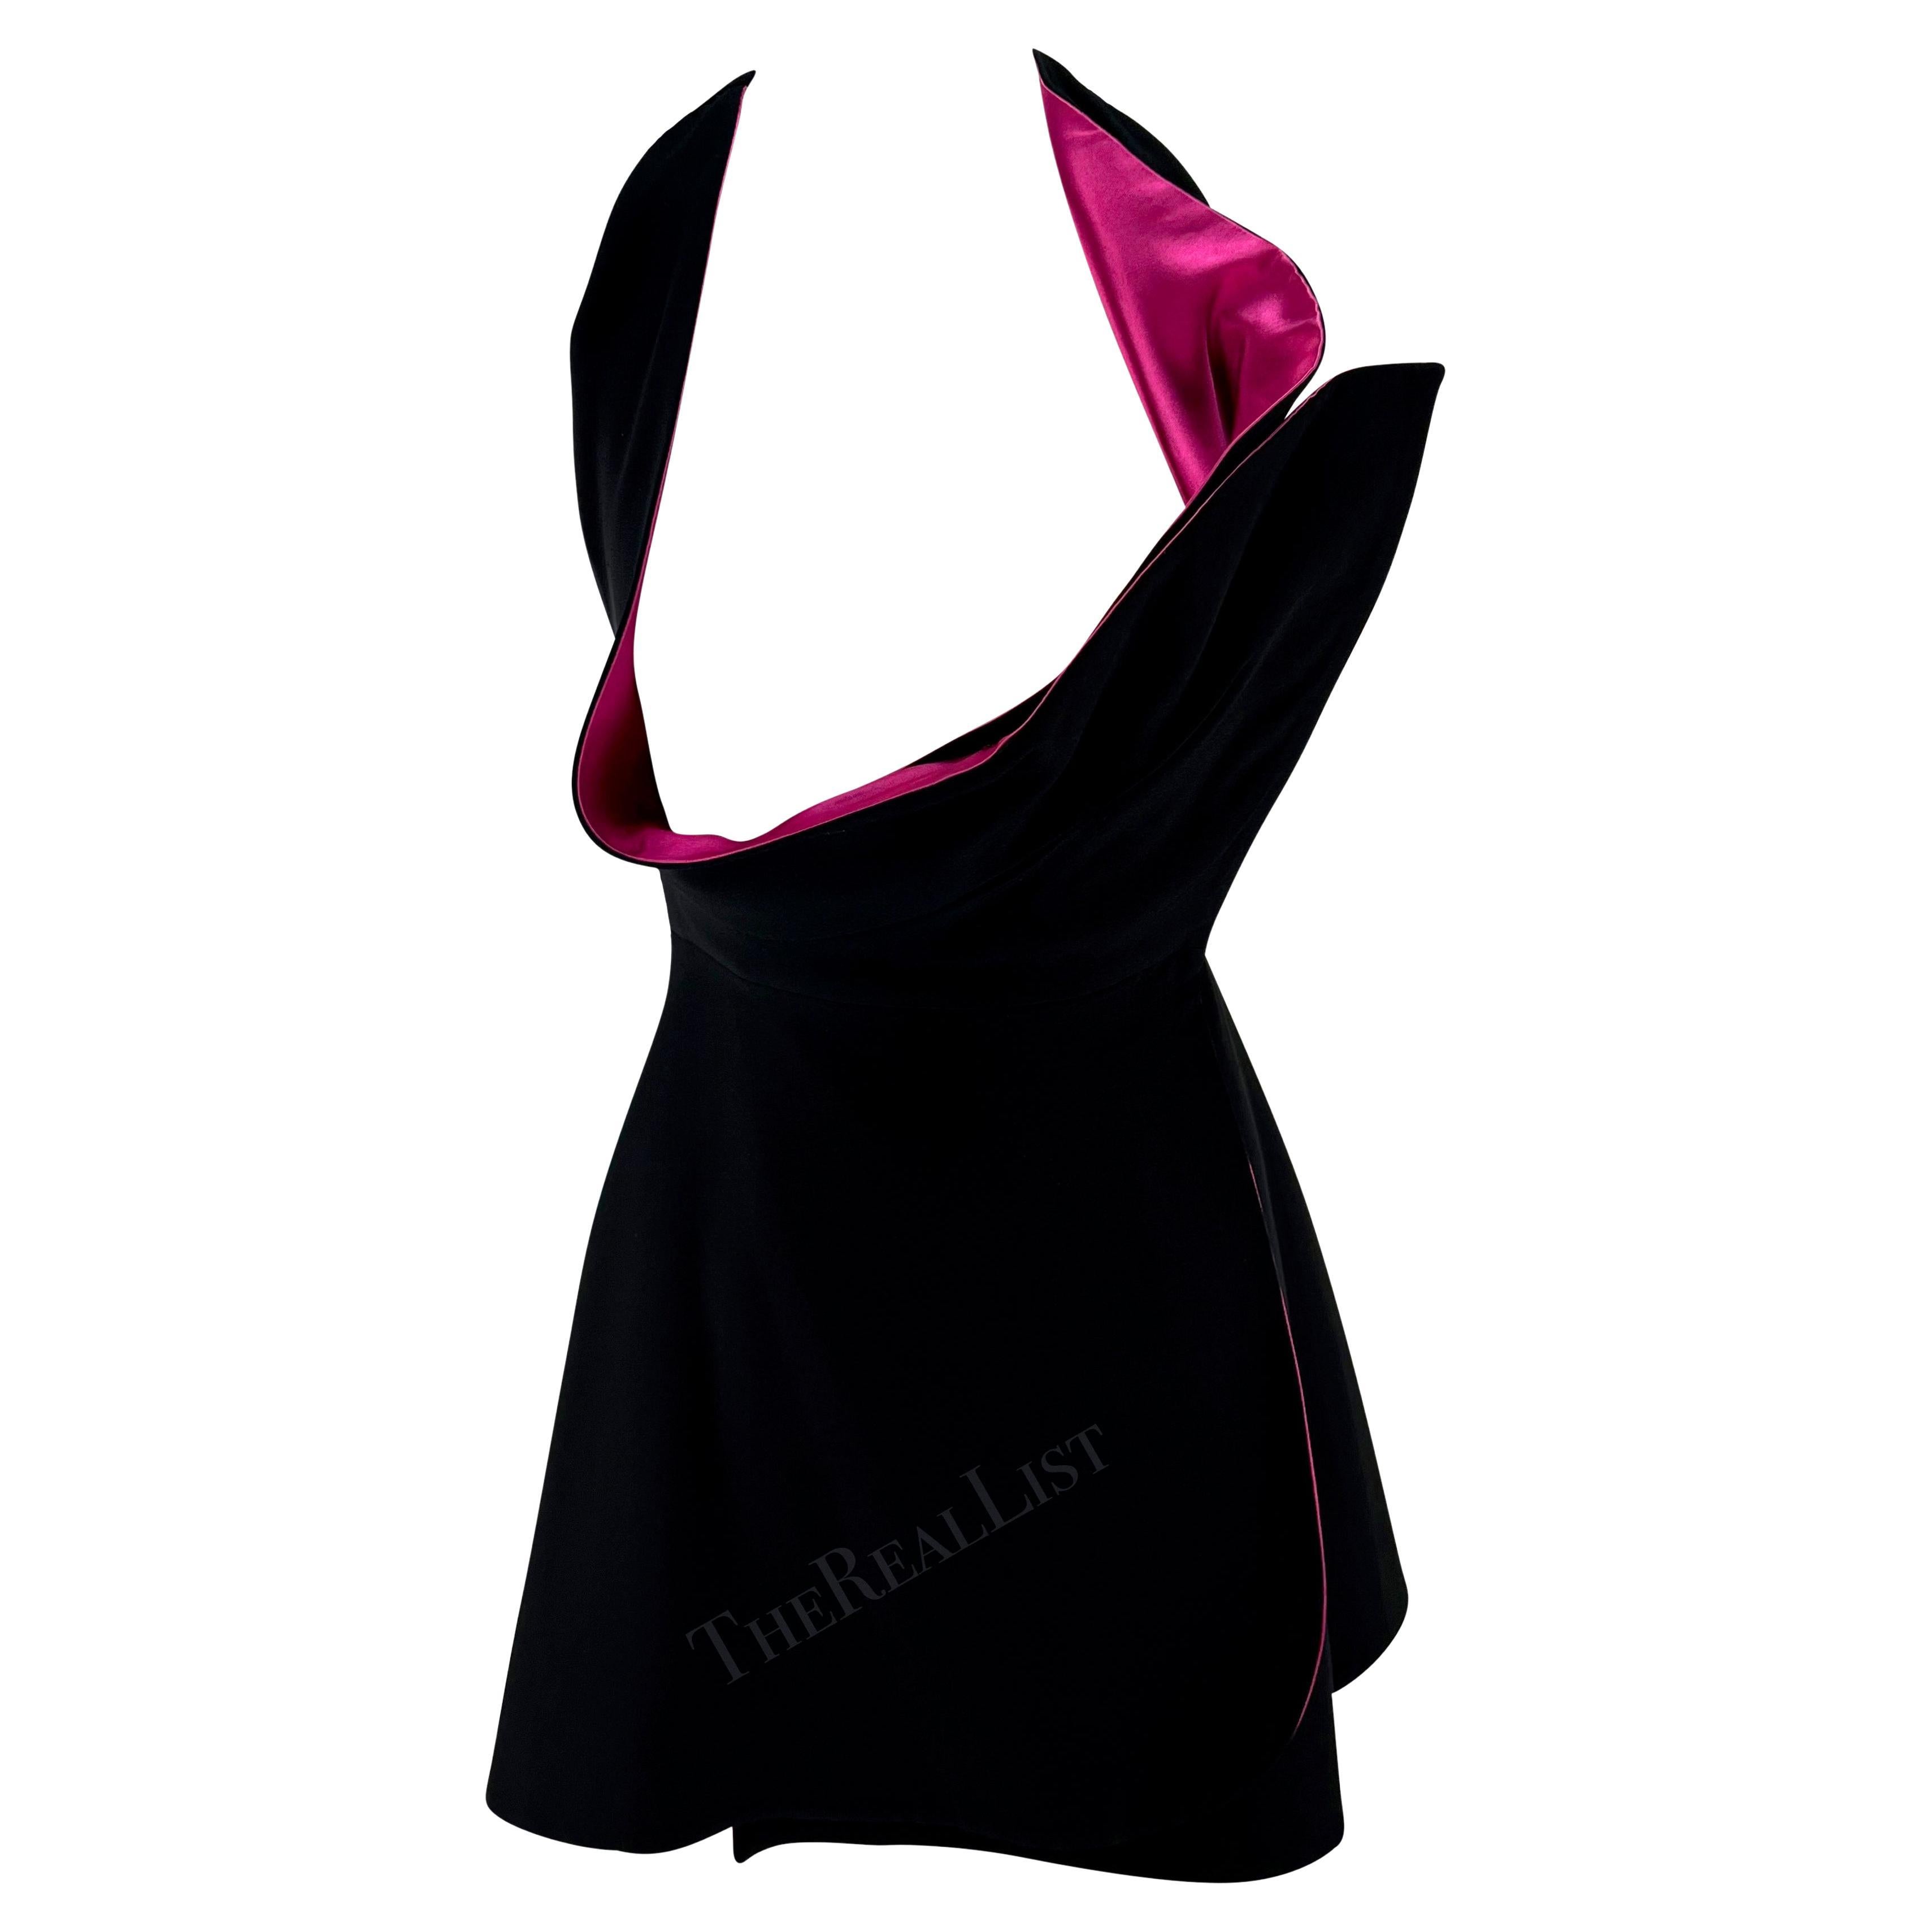 Giani Versace Runway A/H 1991 - Mini robe portefeuille noire, rose vif et ouverte sur le buste en vente